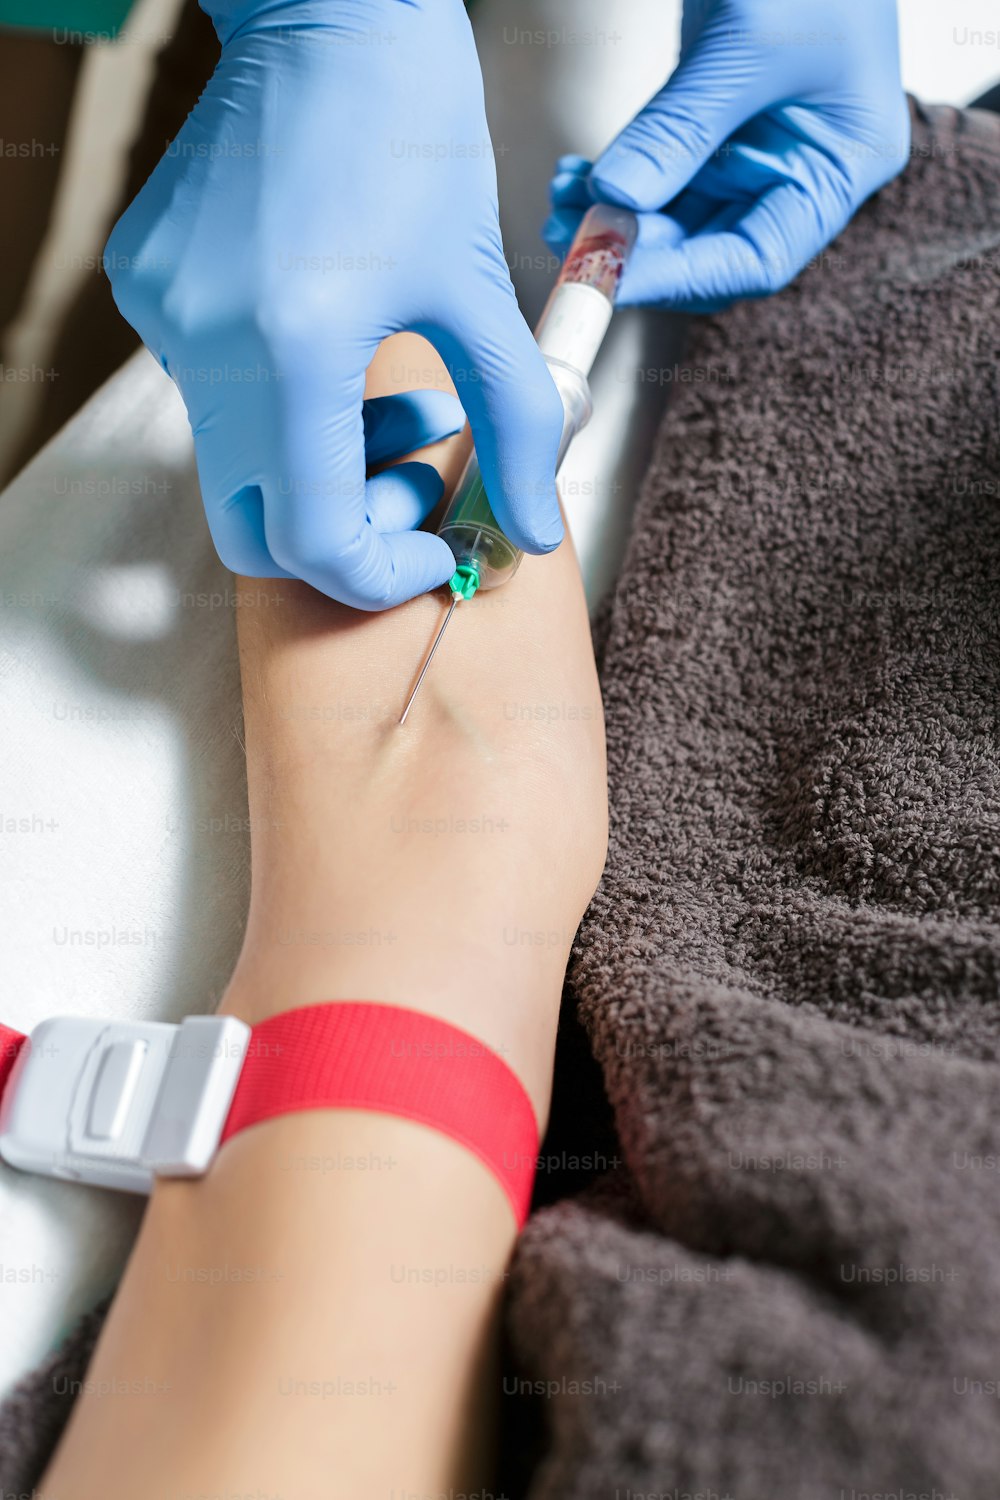 Enfermera tomando una muestra de sangre del brazo del paciente. Preparación de sangre para el procedimiento Plasmolifting.